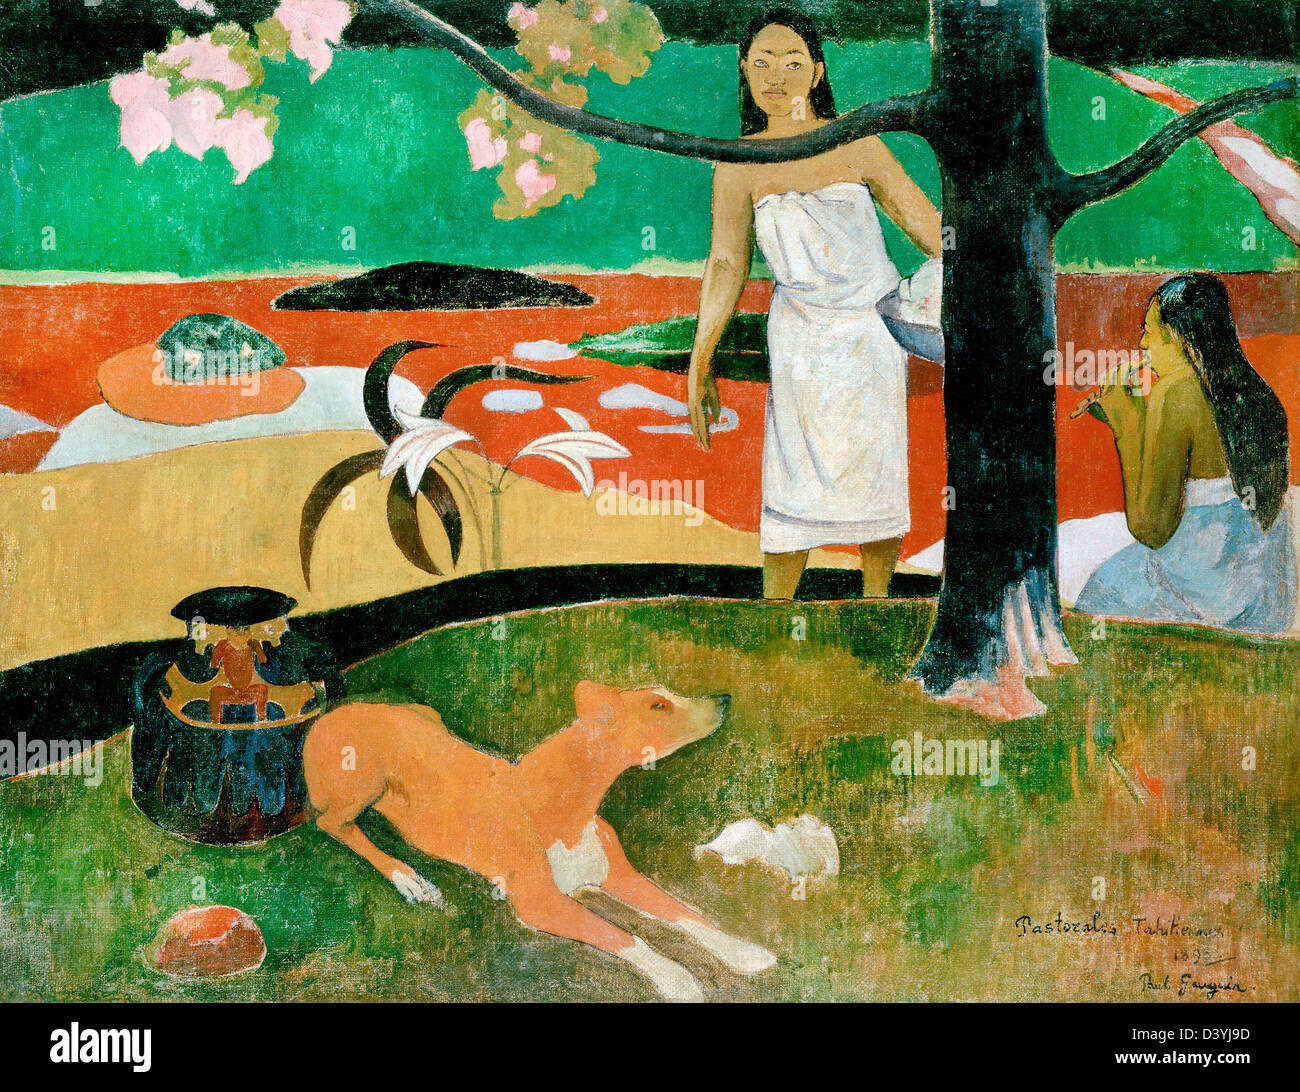 Paul Gauguin, pastorales tahitiennes. 1893. Huile sur toile. L'Ermitage, Saint-Pétersbourg, Russie Banque D'Images